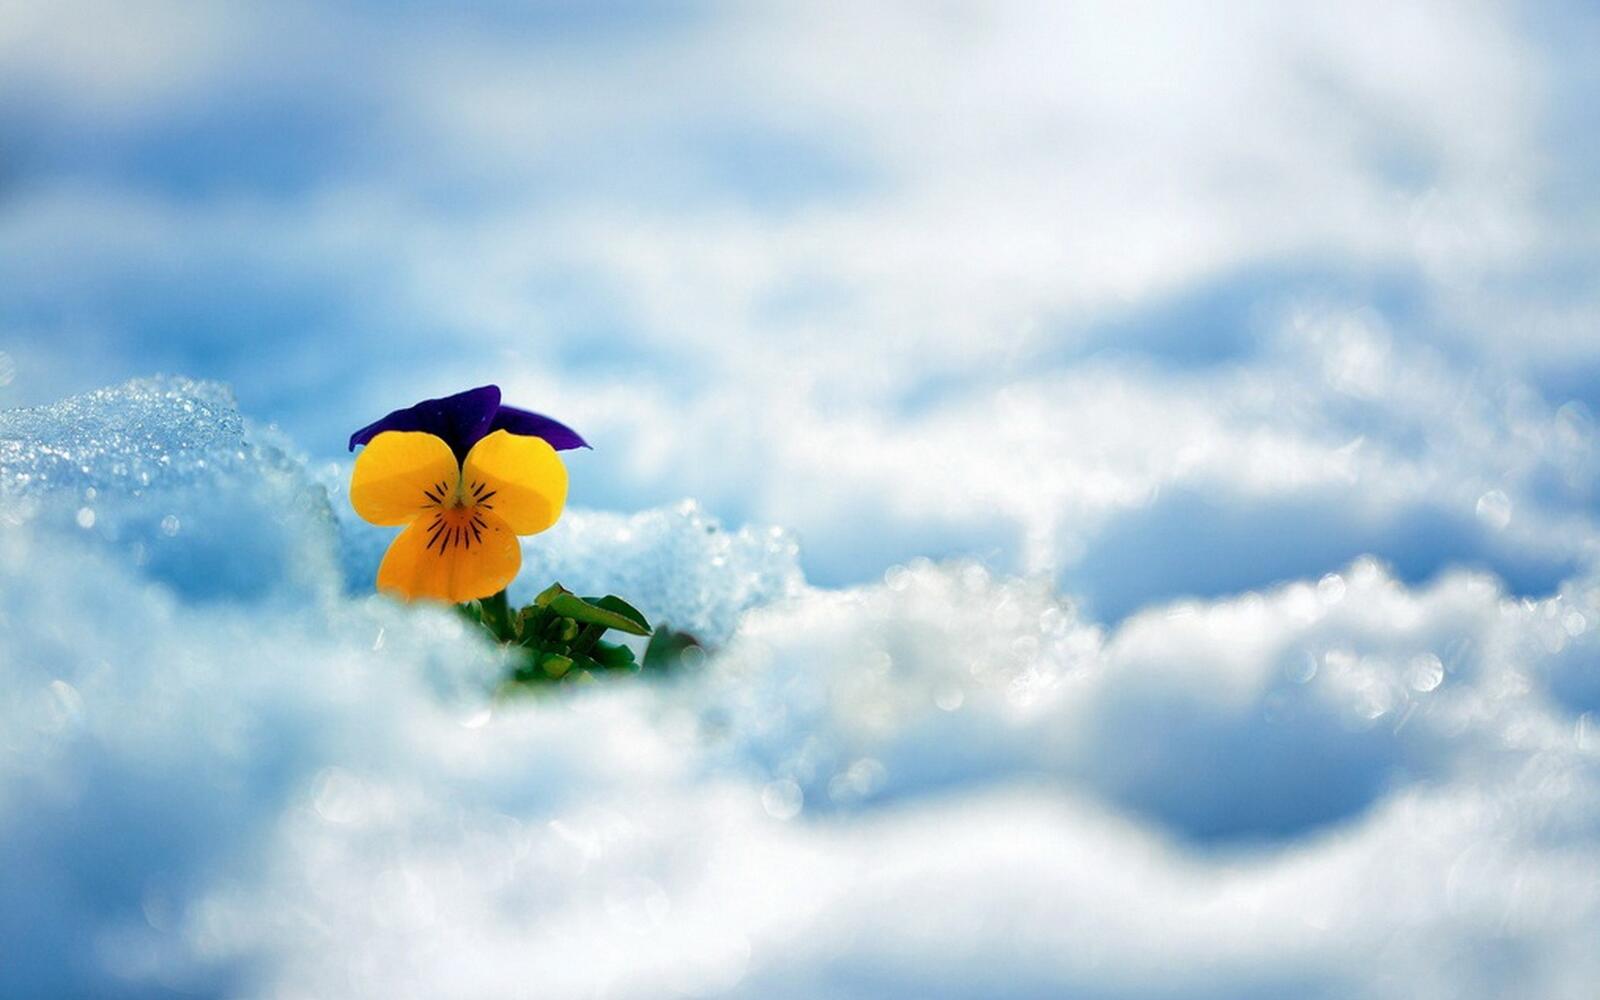 Бесплатное фото Маленький желтый цветочек пророс через снег